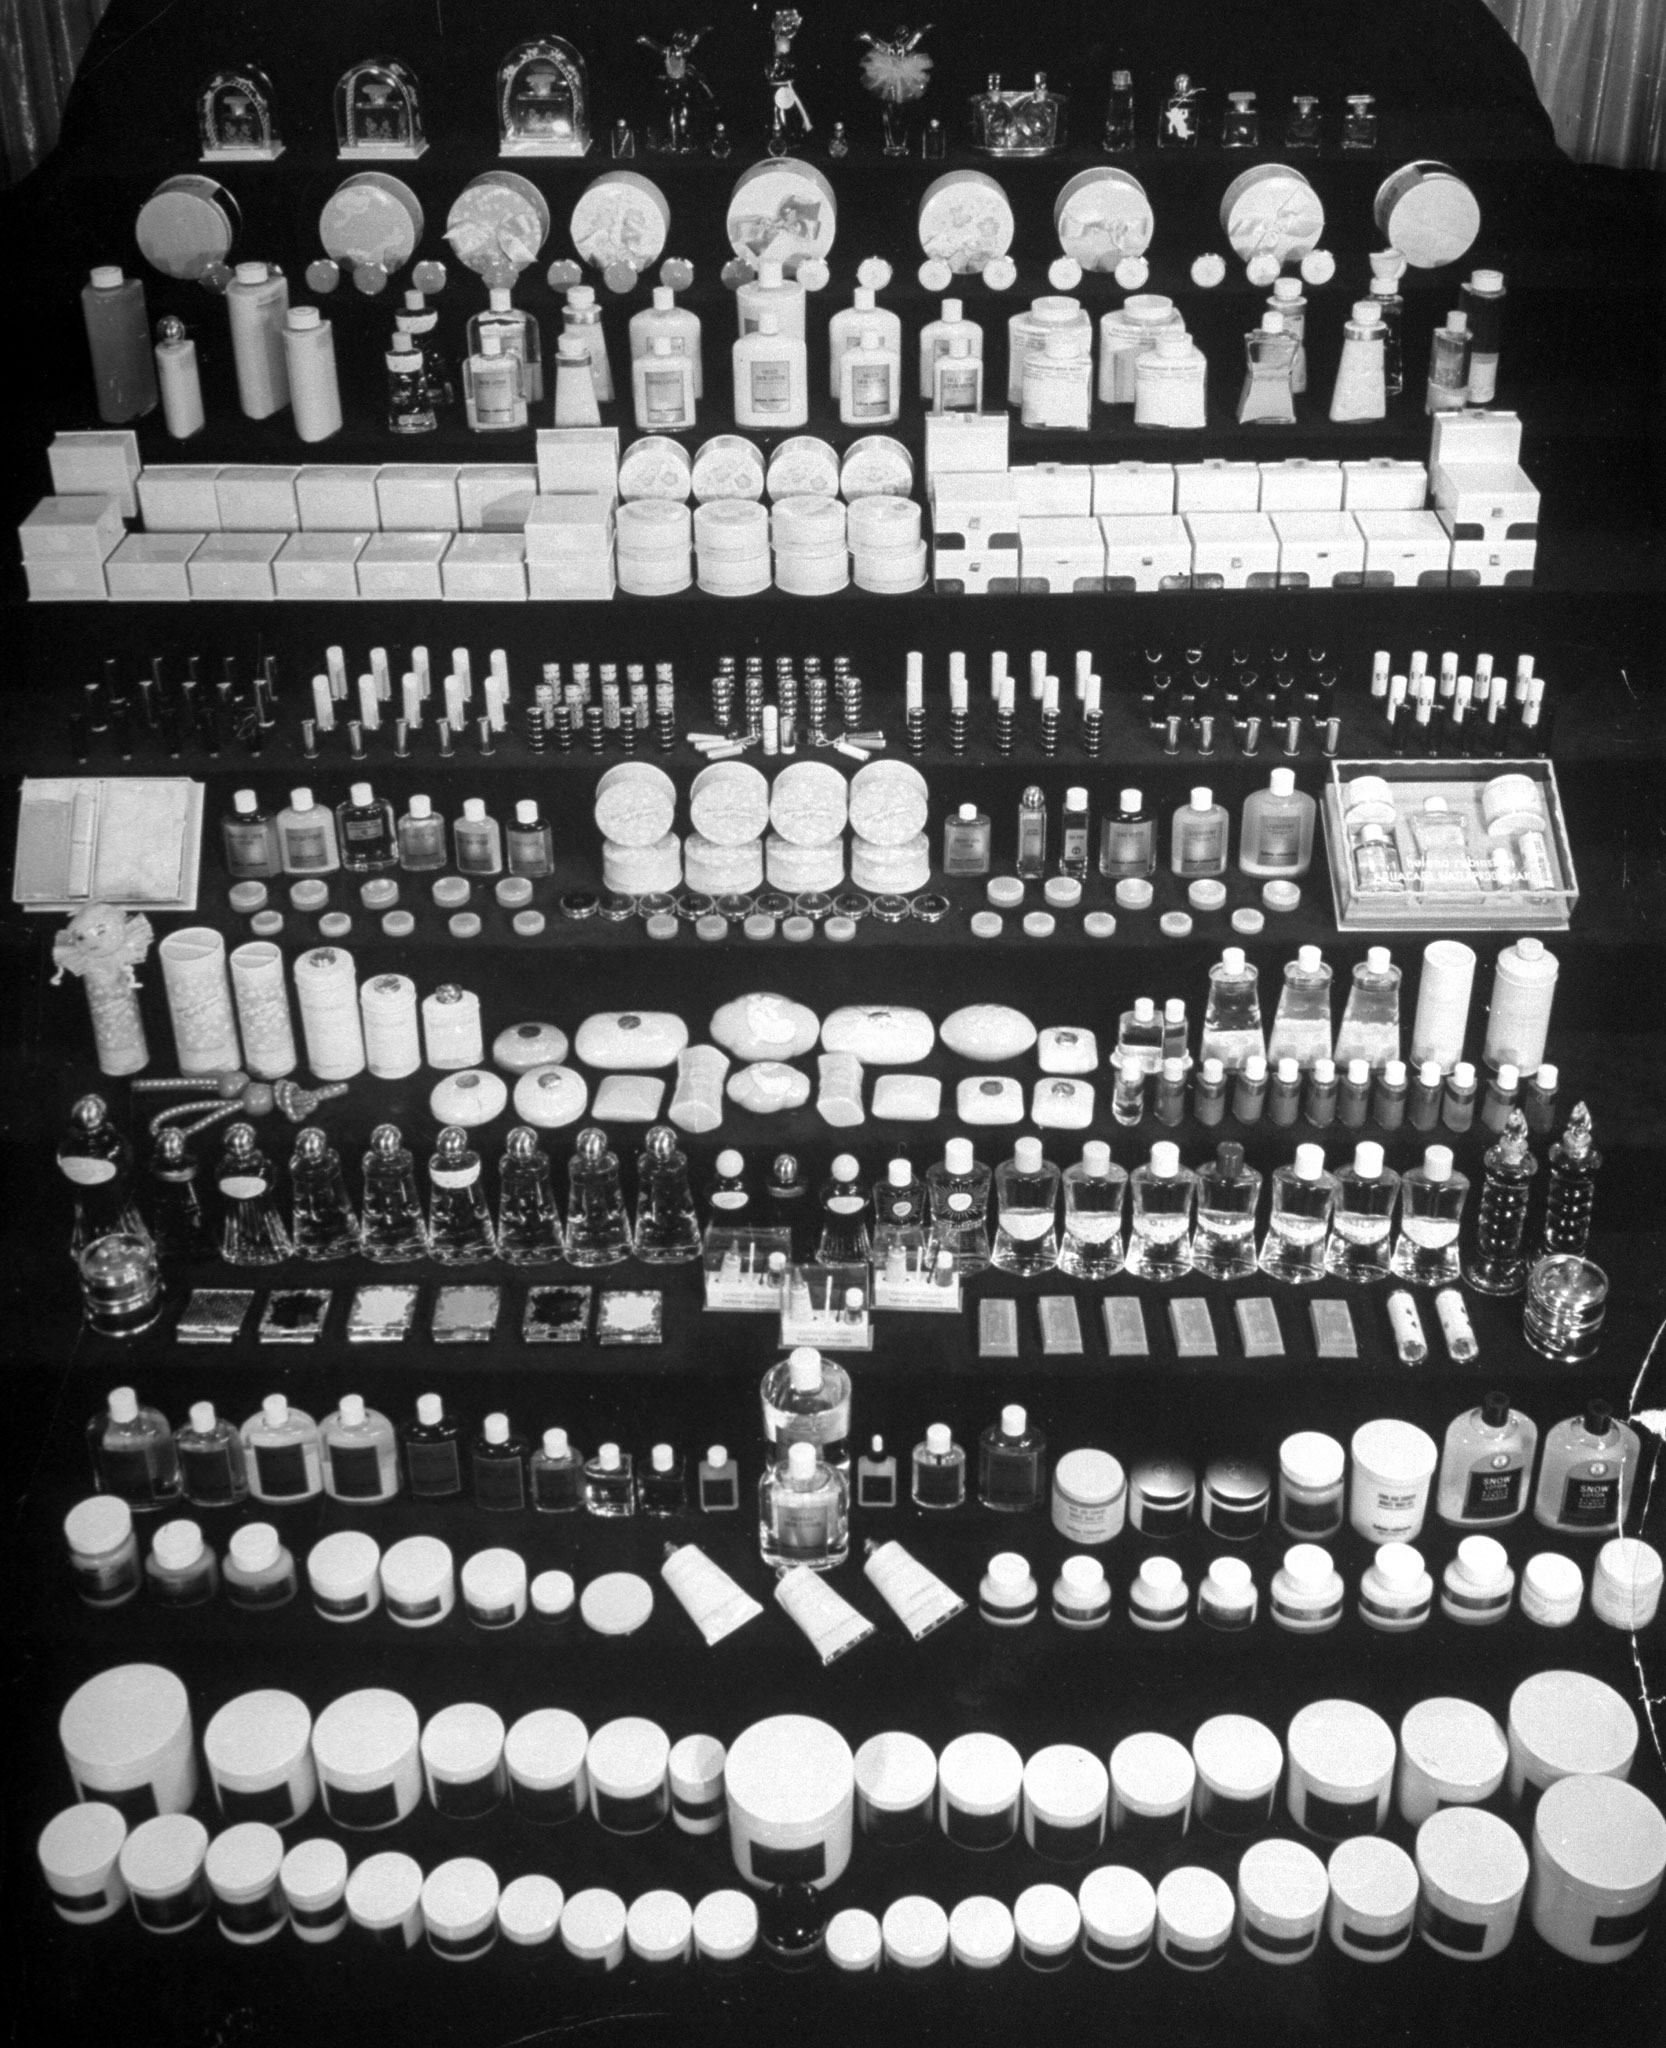 Helena Rubinstein products, 1941